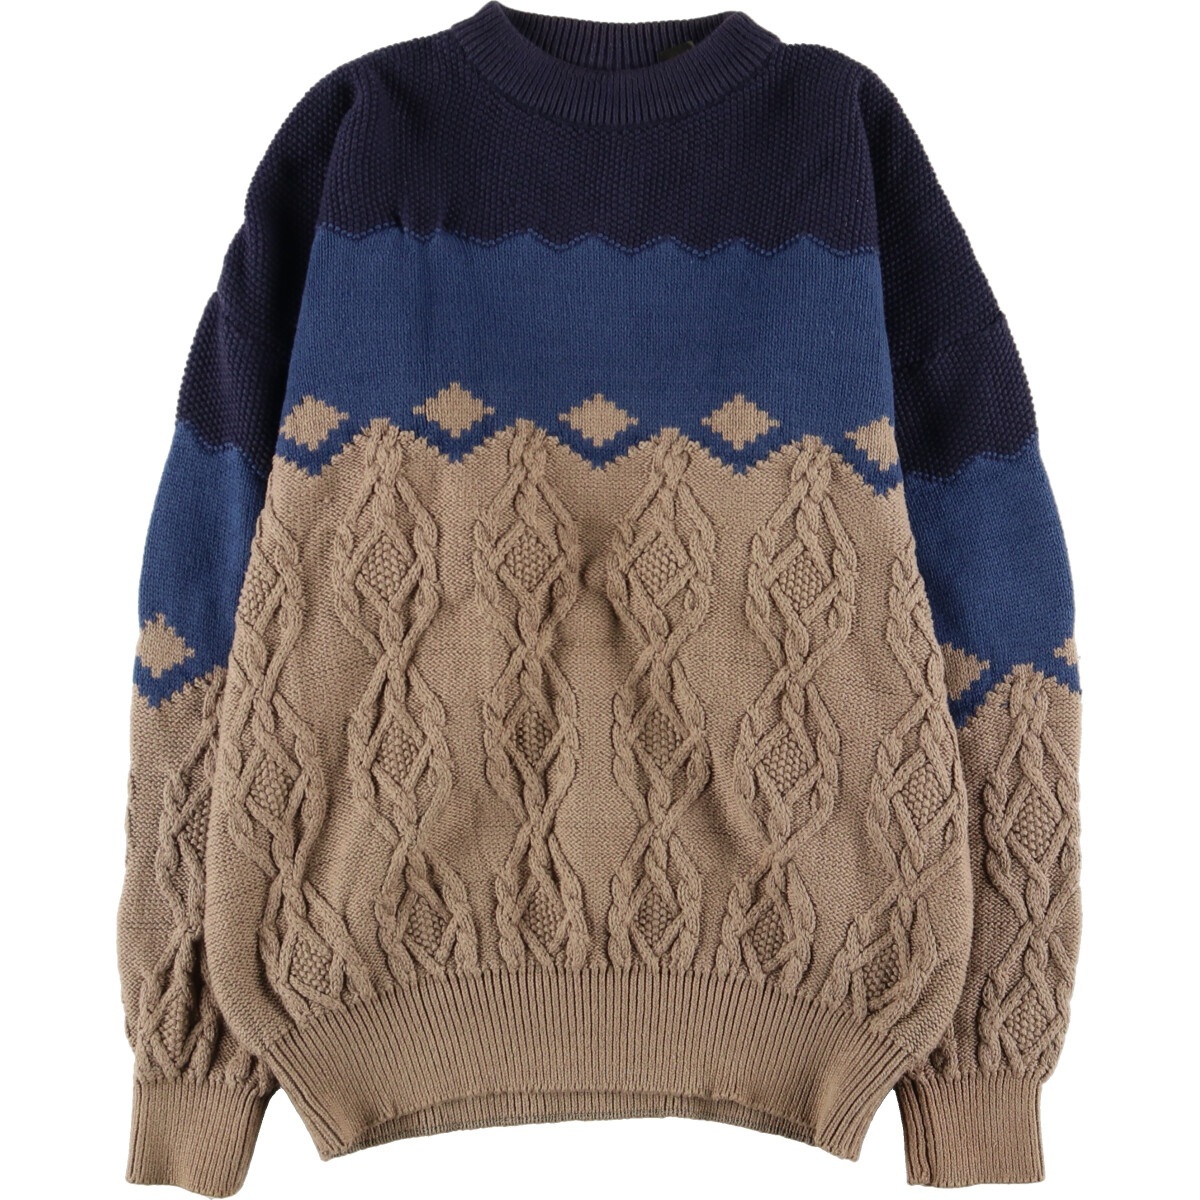  б/у одежда Timberland Timberland кабель плетеный хлопок вязаный свитер мужской XL /eaa371720